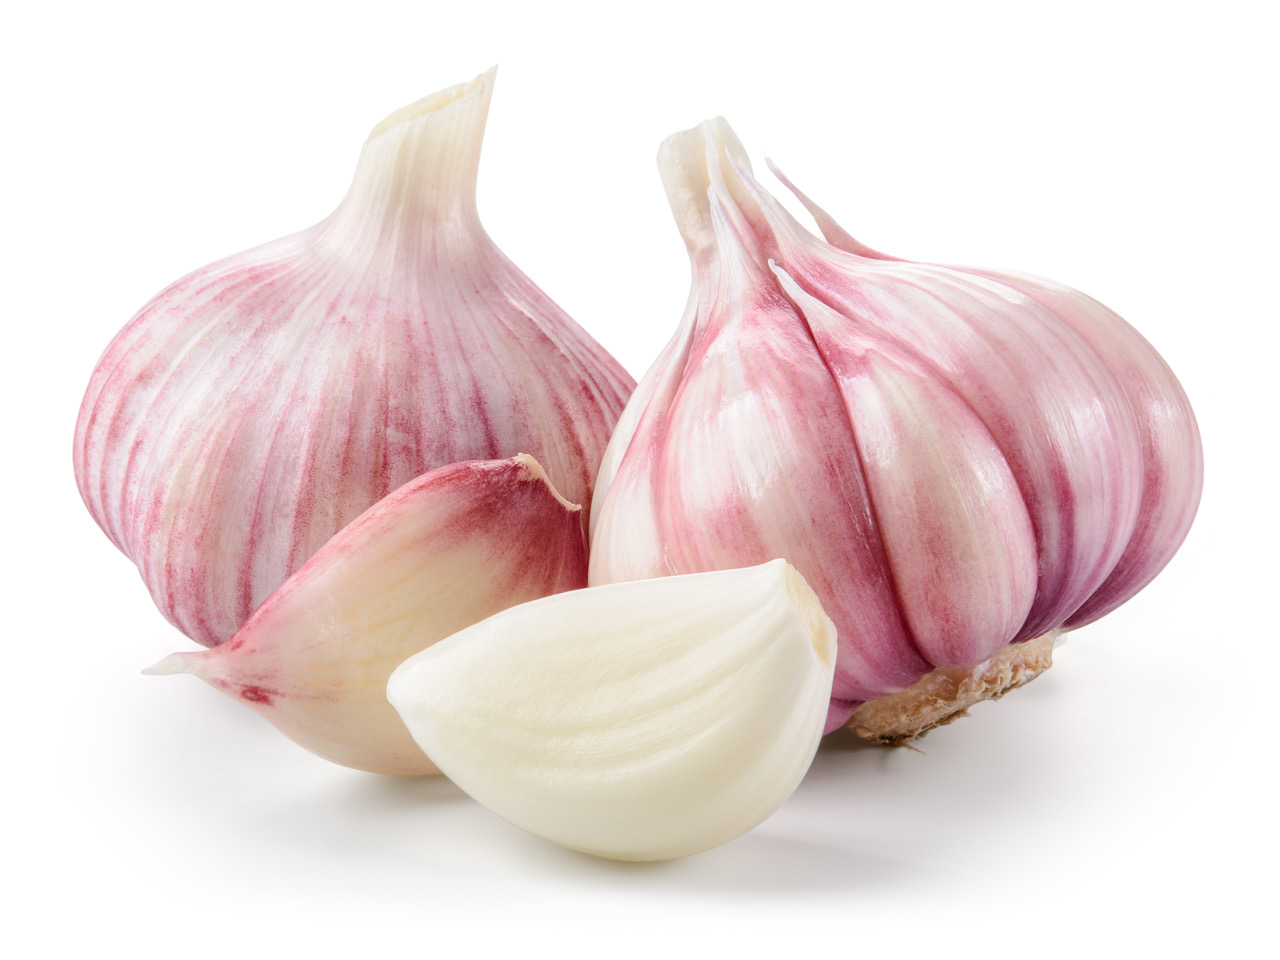 Garlic - some say it works wonders